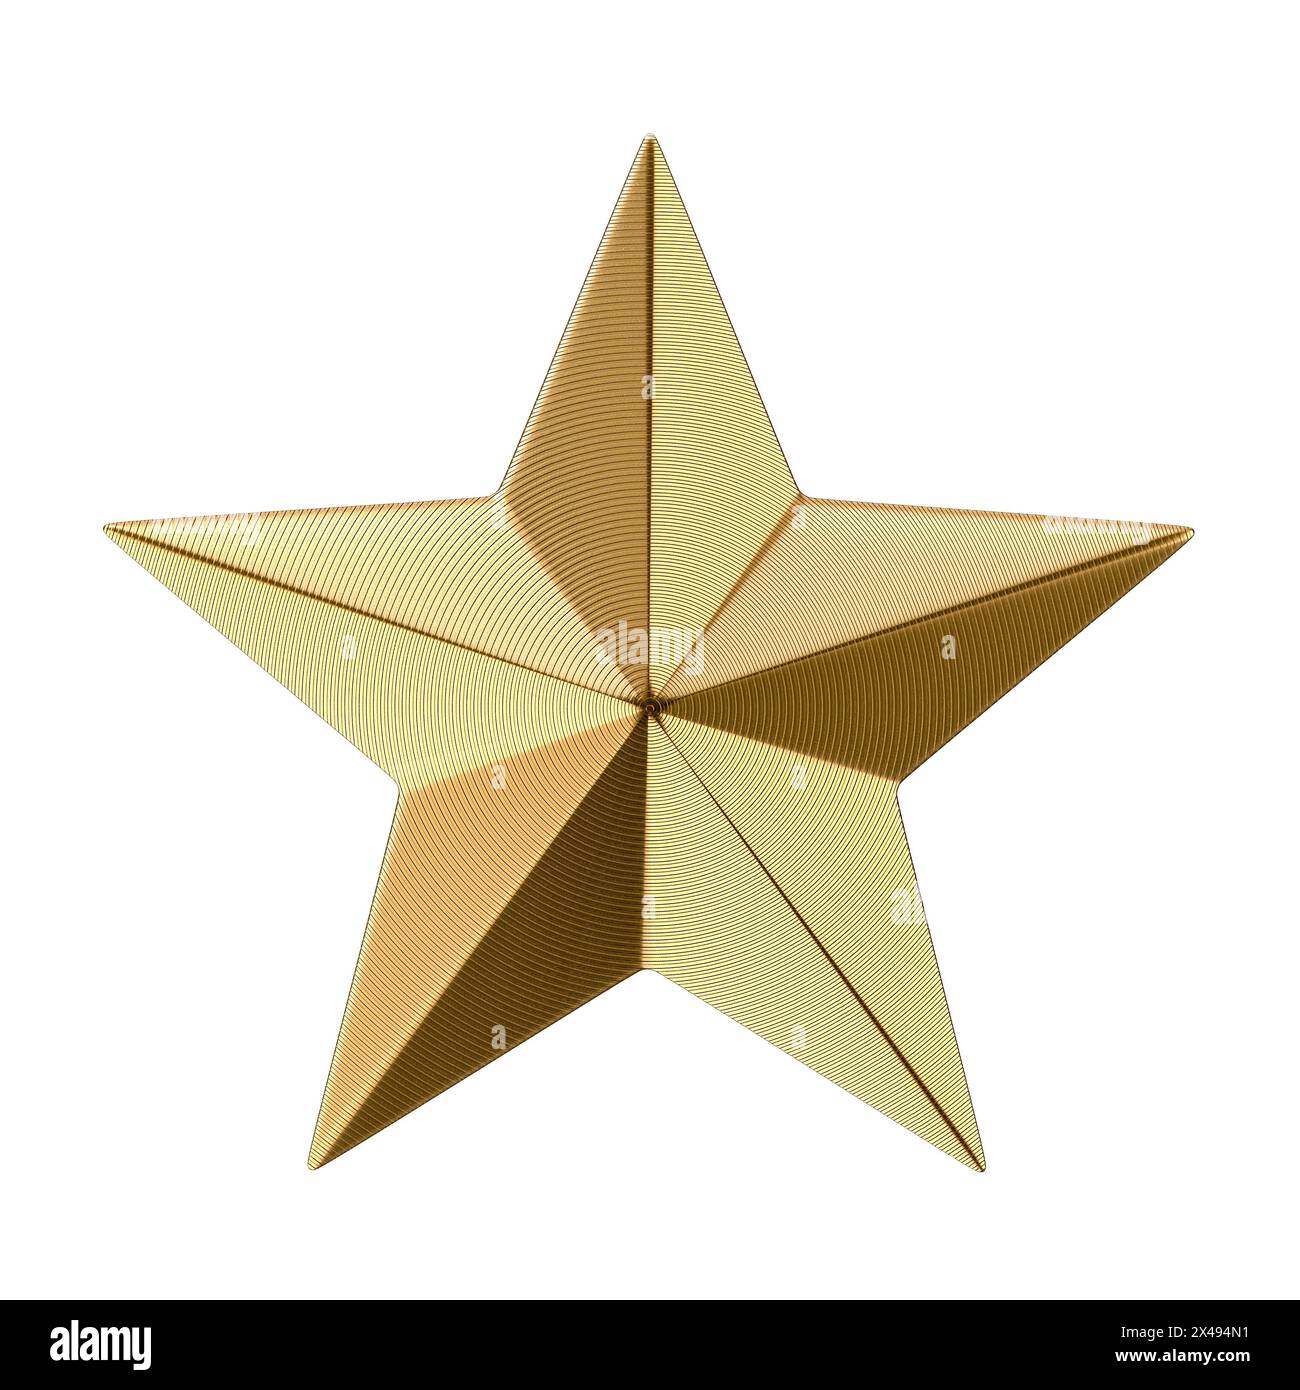 Étoile dorée texturée avec une surface réfléchissante isolée sur un fond blanc pur Banque D'Images